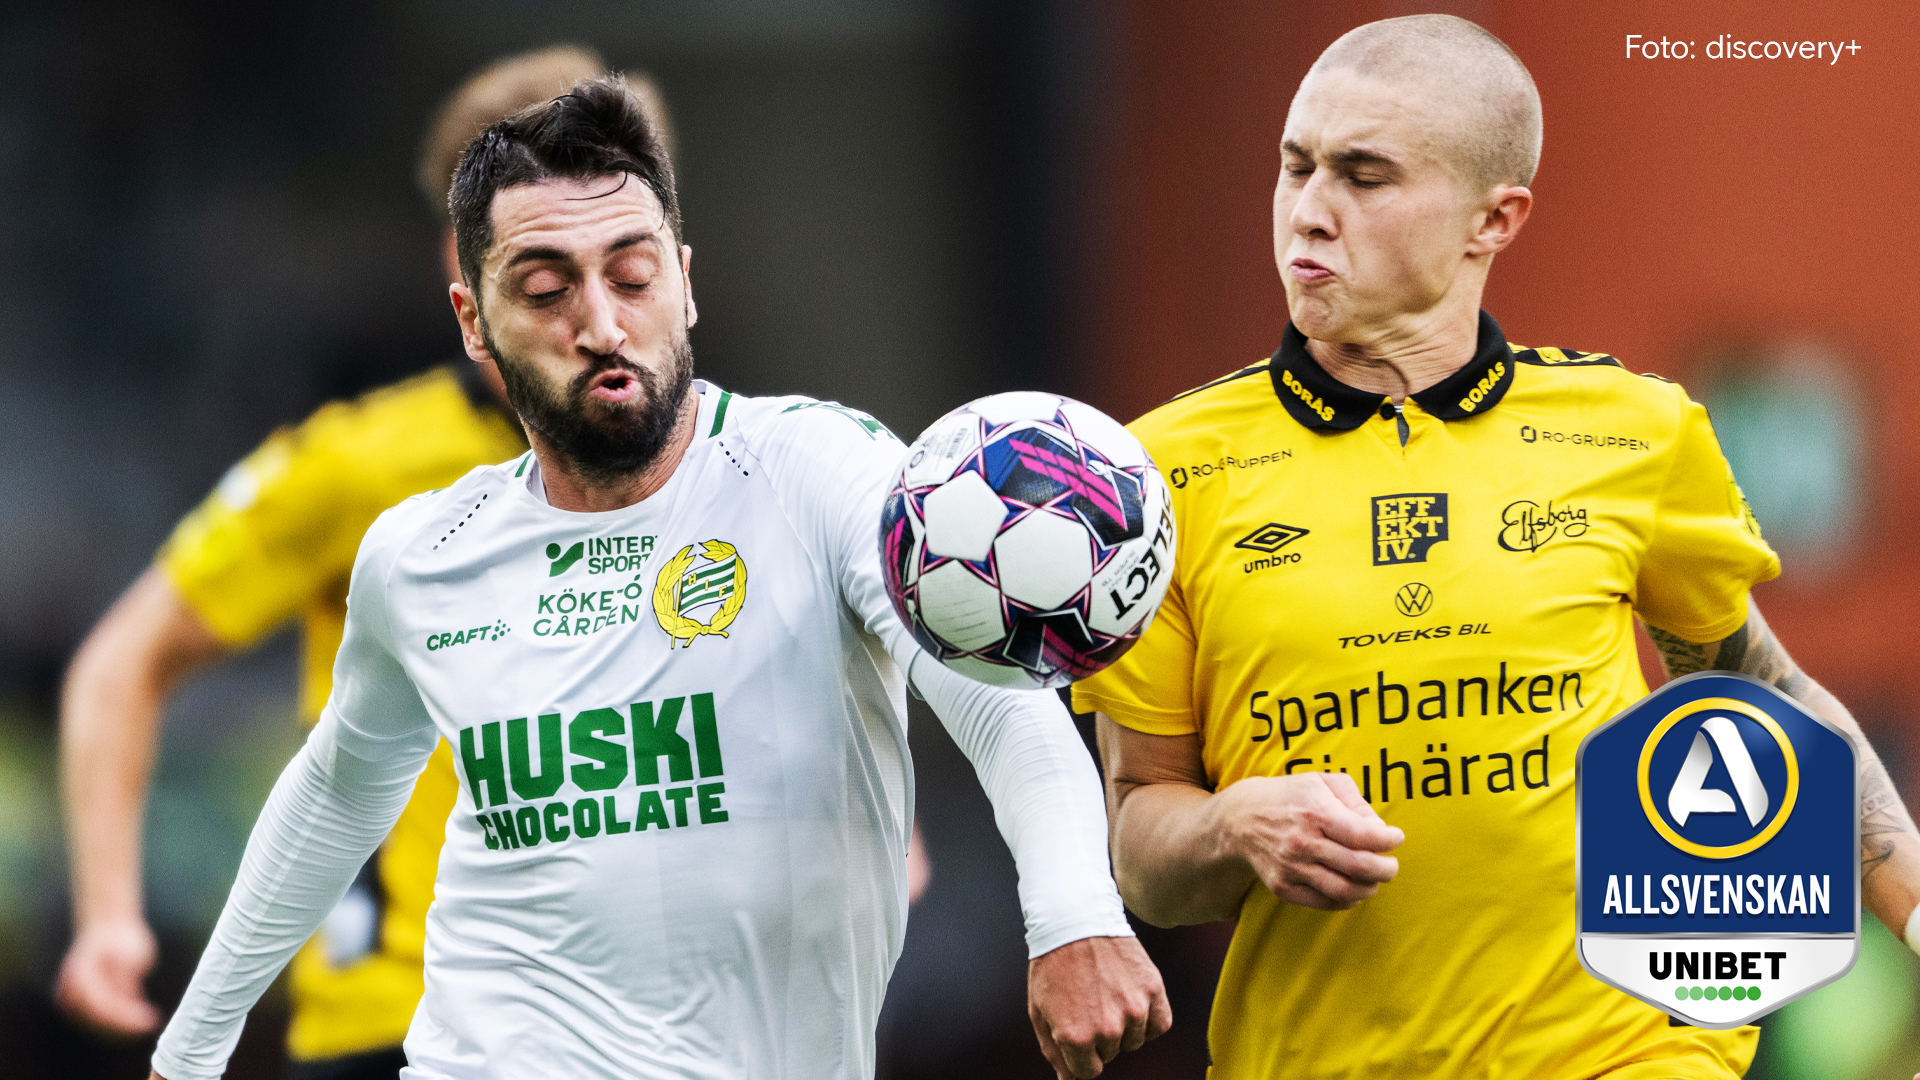 Match mellan Hammarby och Elfsborg i Allsvenskan. Foto från discovery+.